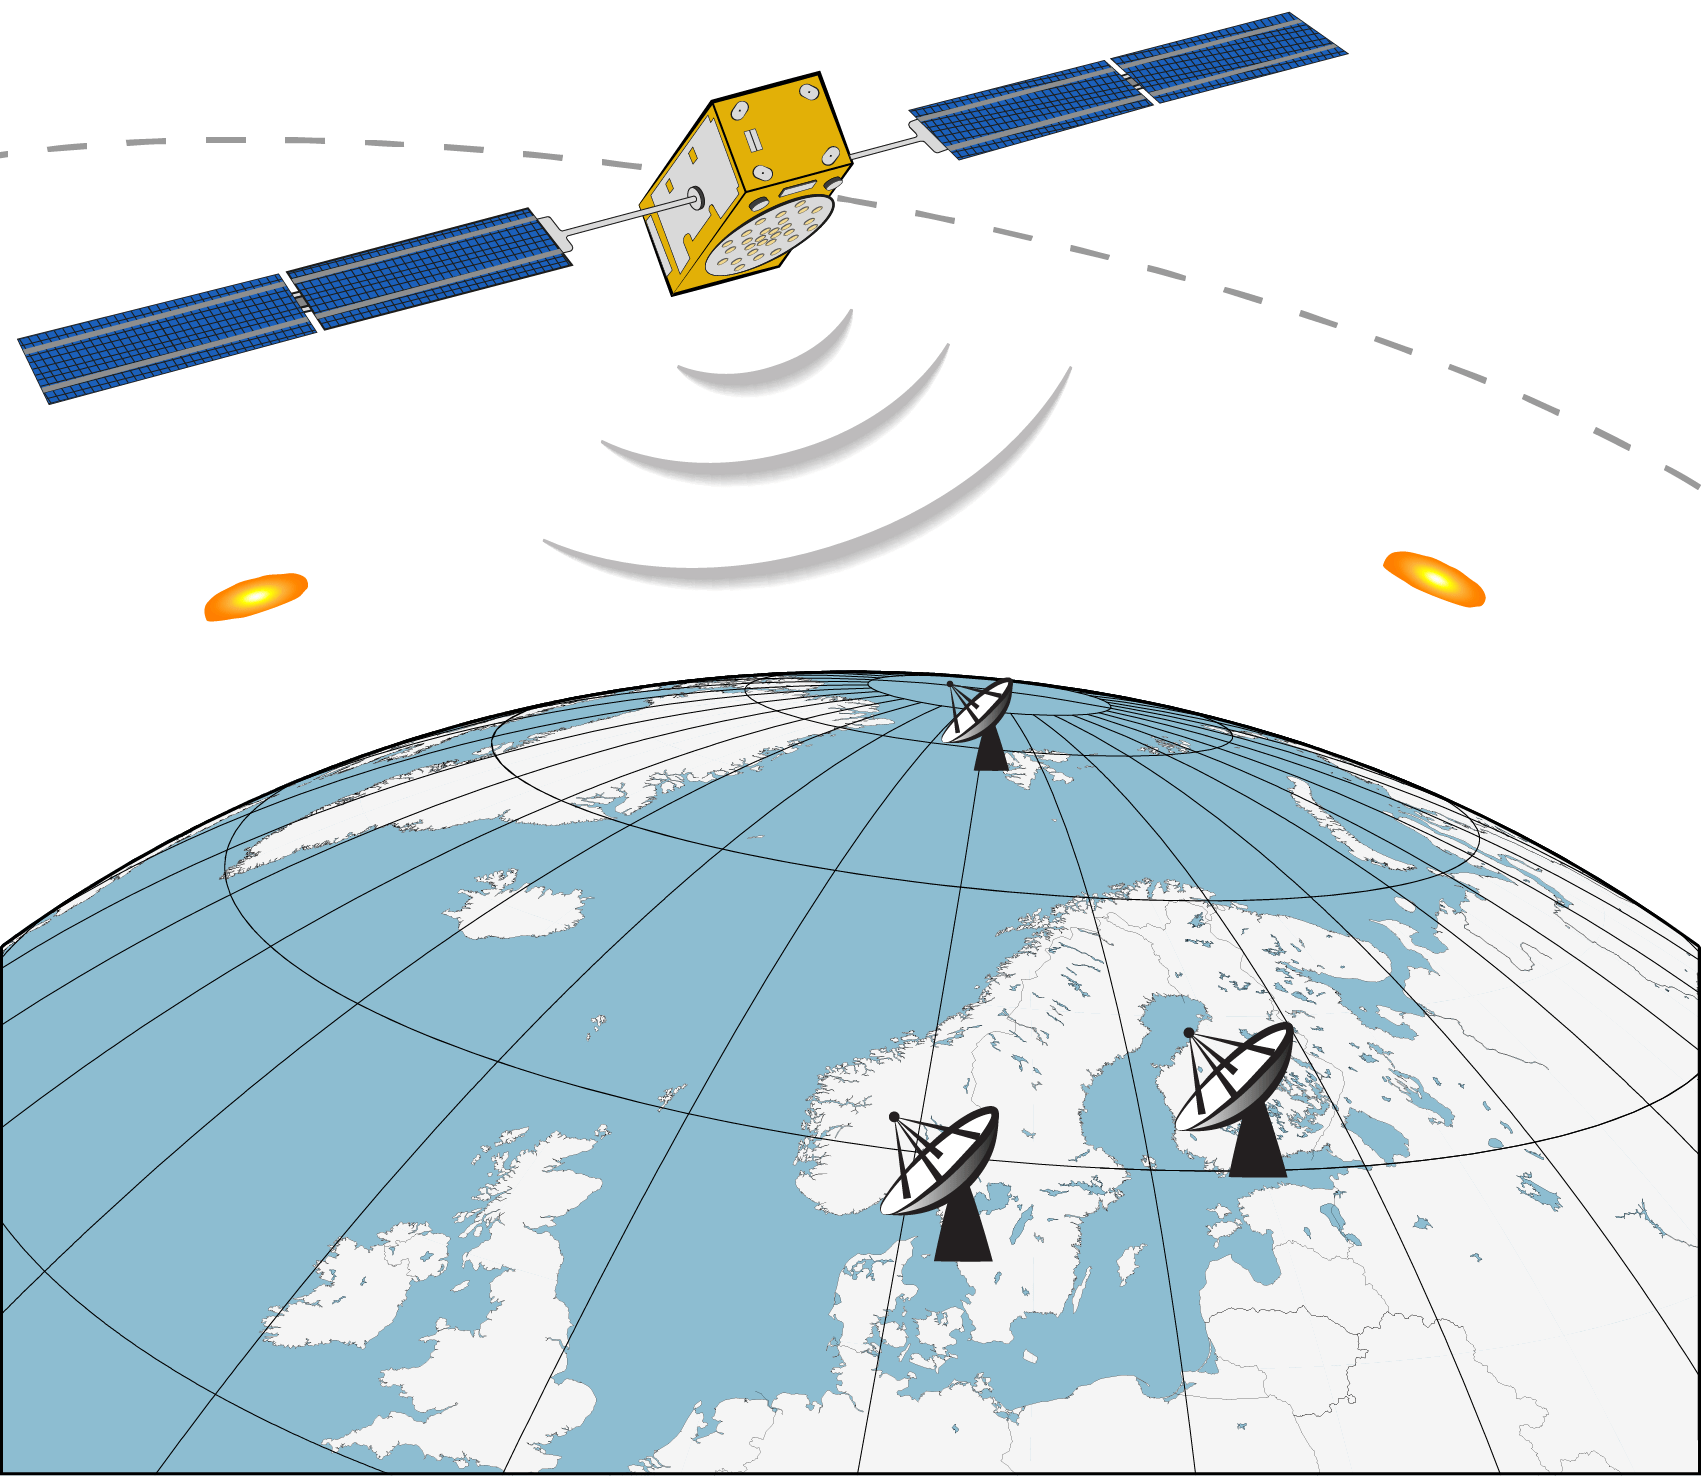 Diagramm mit Satellit, der zu Satellitenschüsseln auf Erde kommuniziert